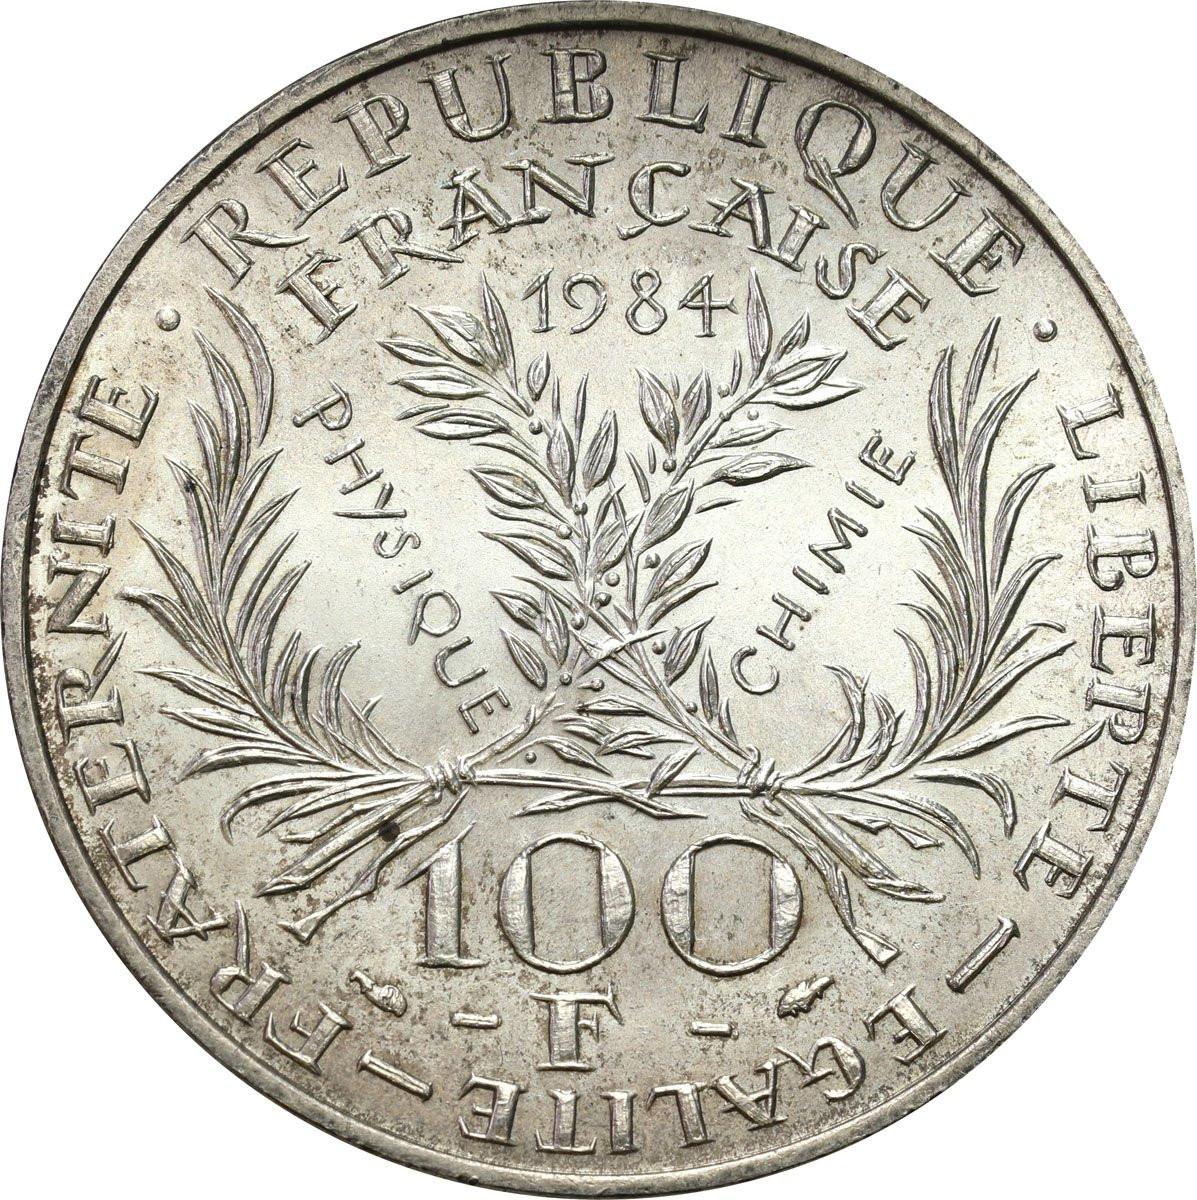 Francja. 100 franków 1984 Maria Skłodowska-Curie – ZŁOTO + SREBRO